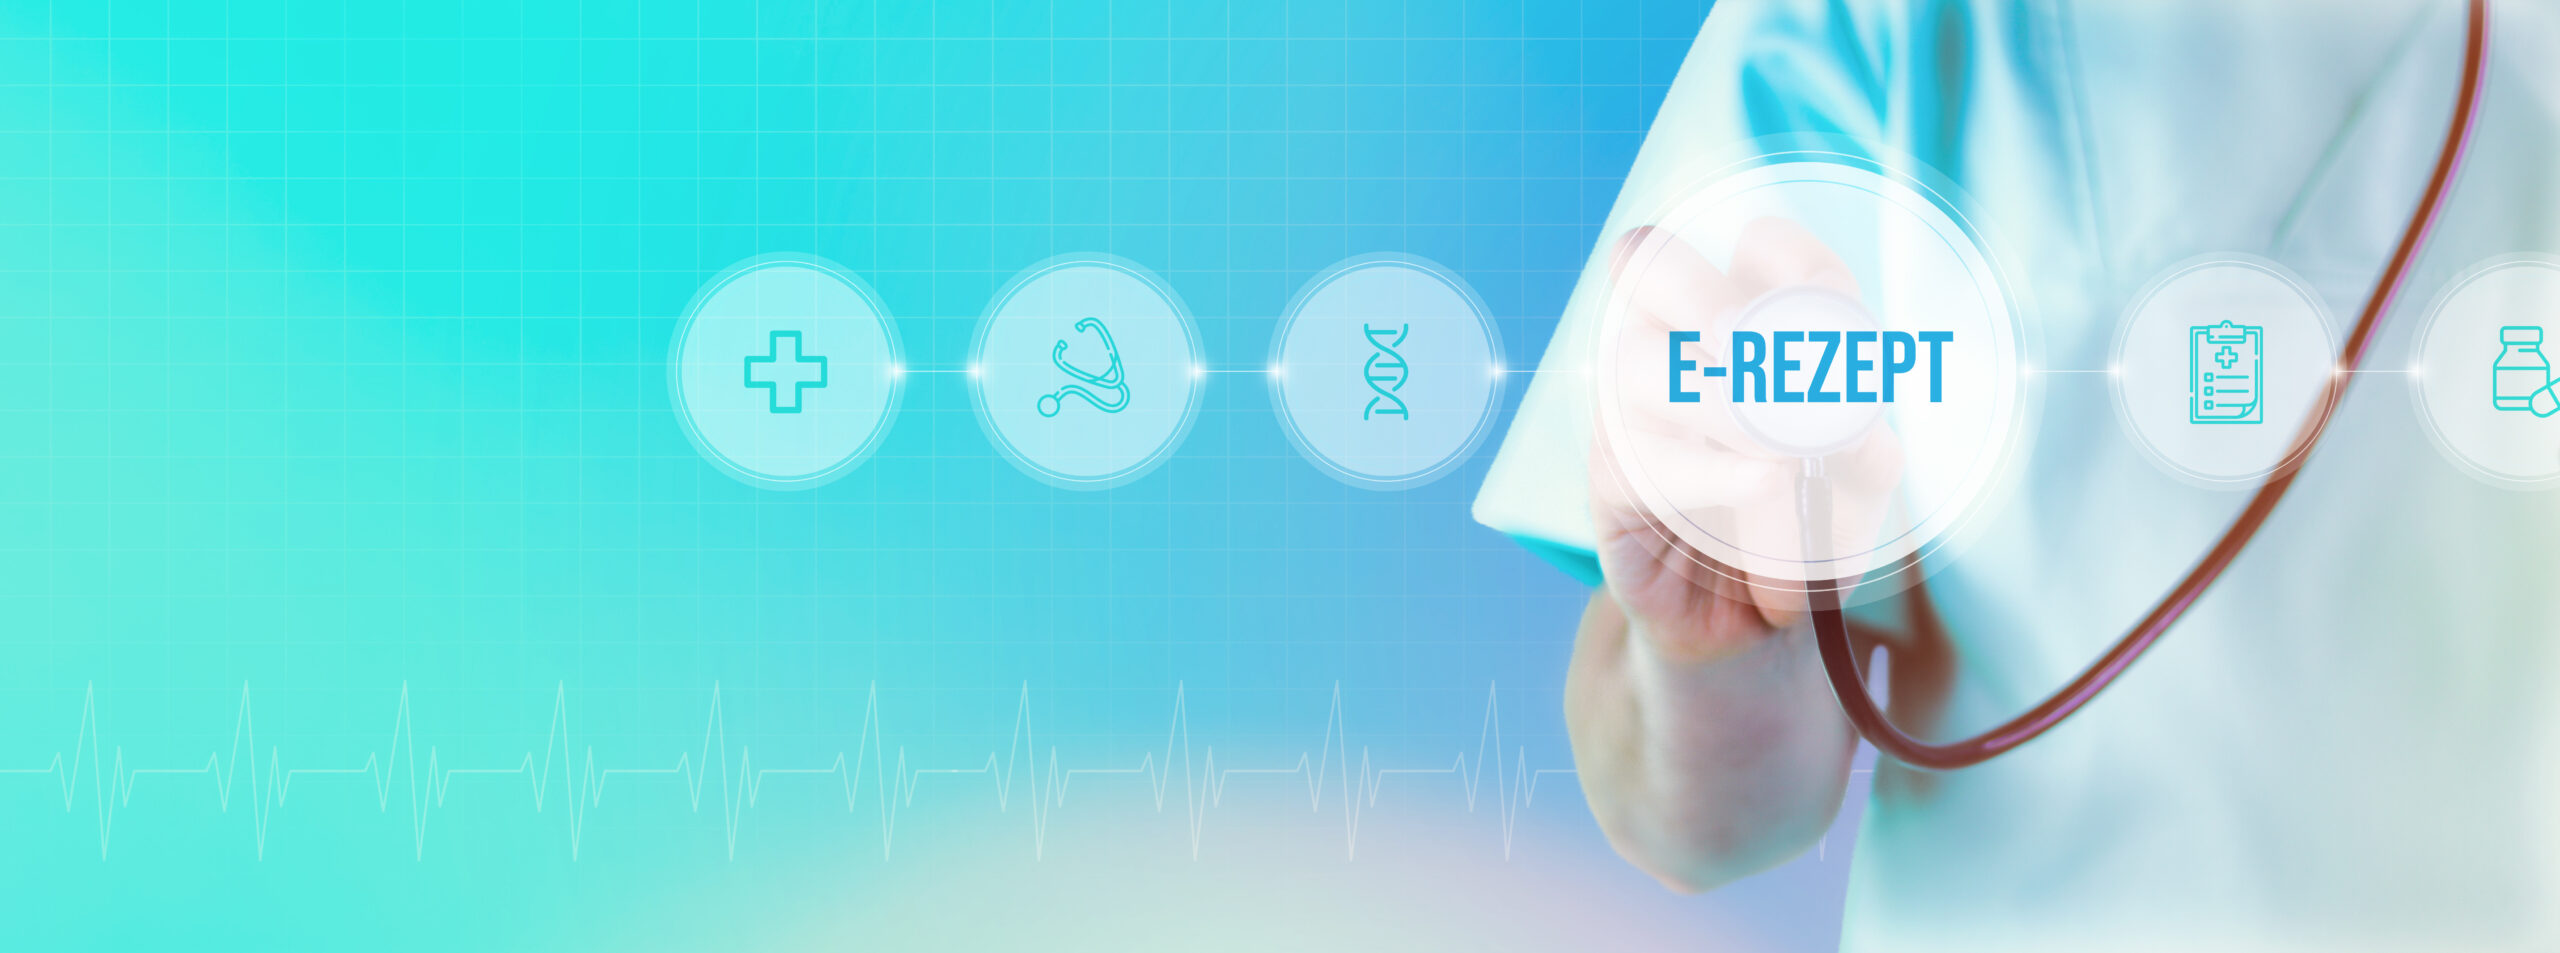 E-Rezept. Arzt mit Stethoskop im Fokus. Icons und Text auf einem digitalen Interface. Medizinische Technologie